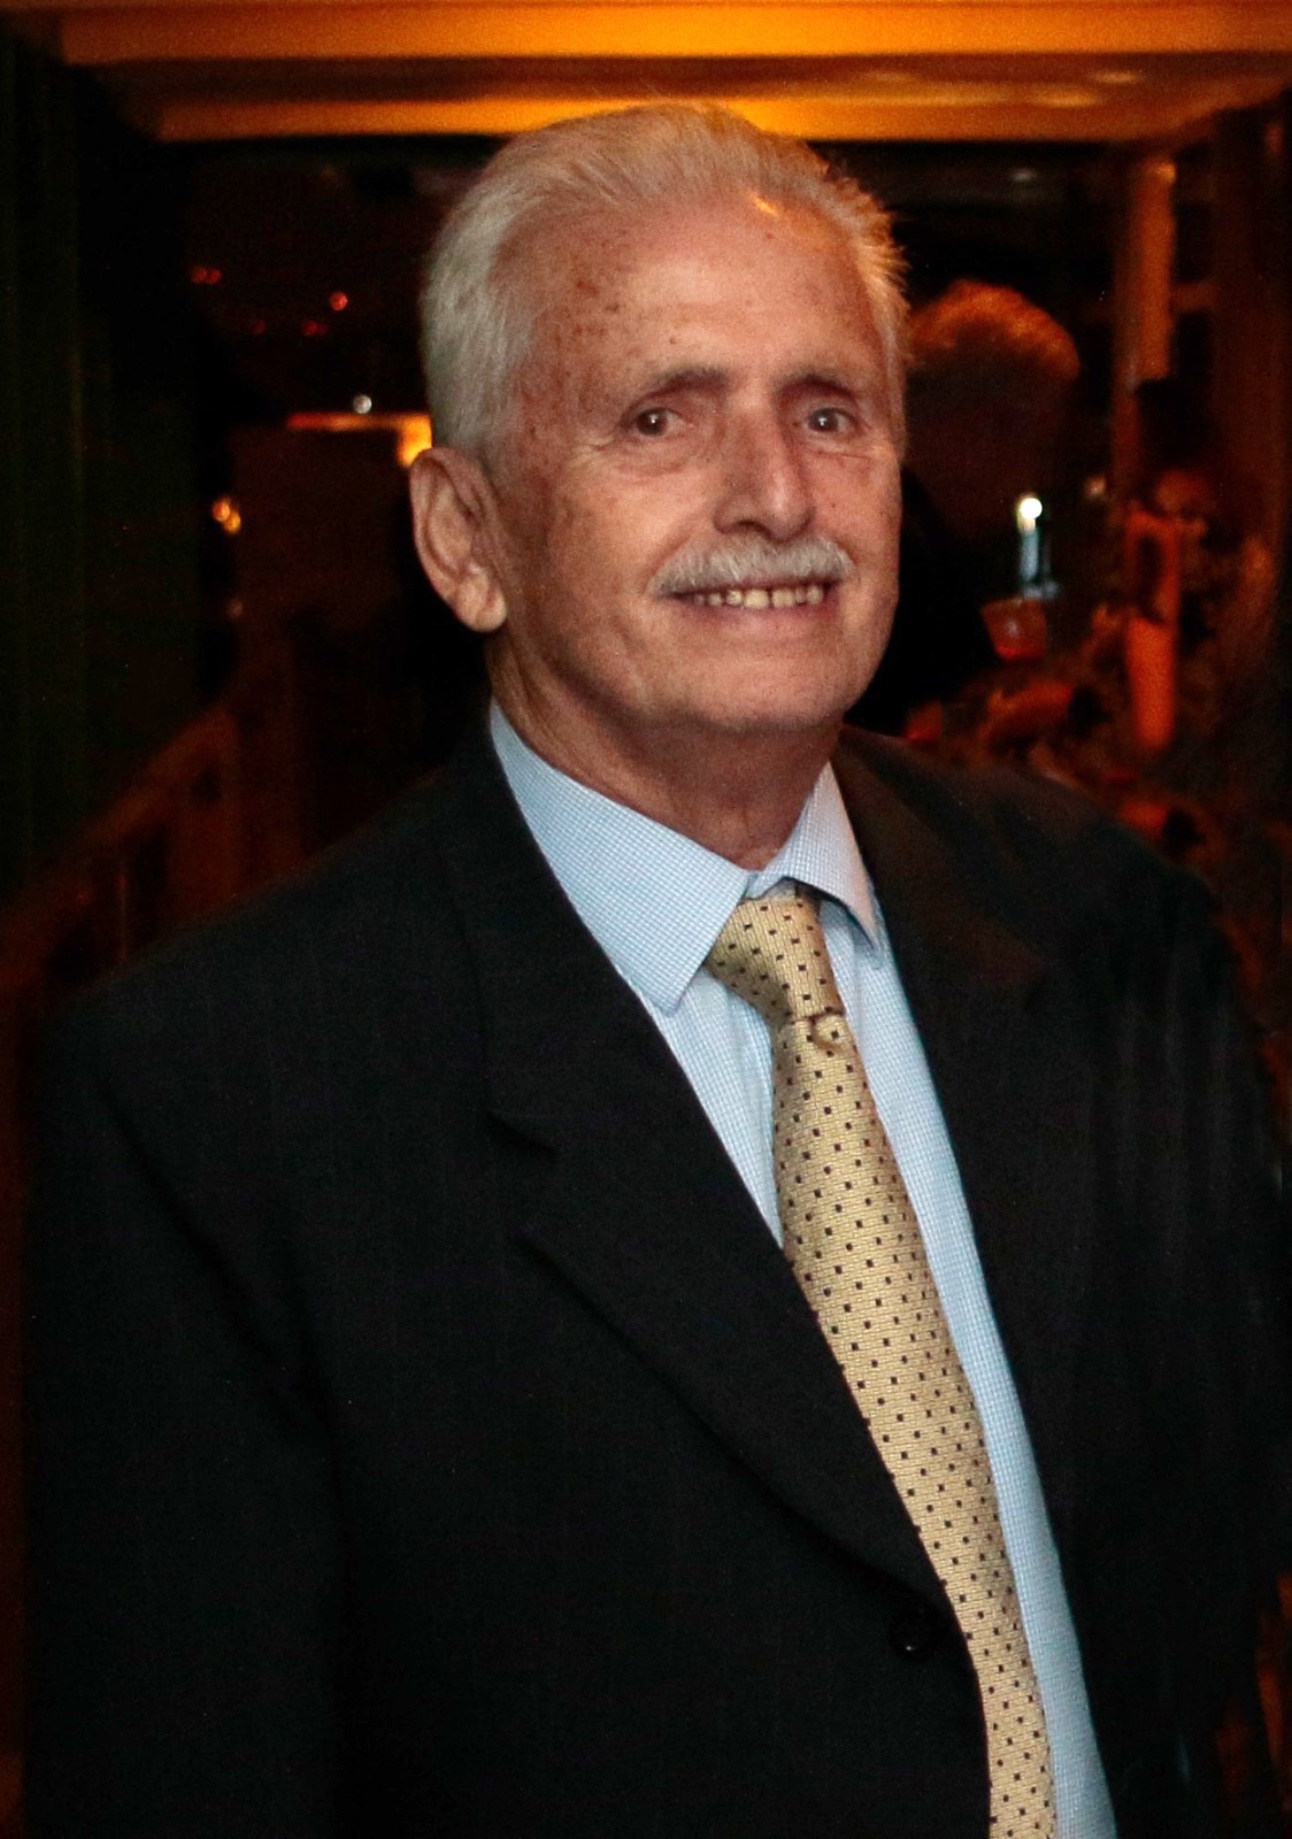 homem branco, idoso, de cabelo e bigodes brancos, usa terno escuro, camisa branca e gravata dourada em um evento